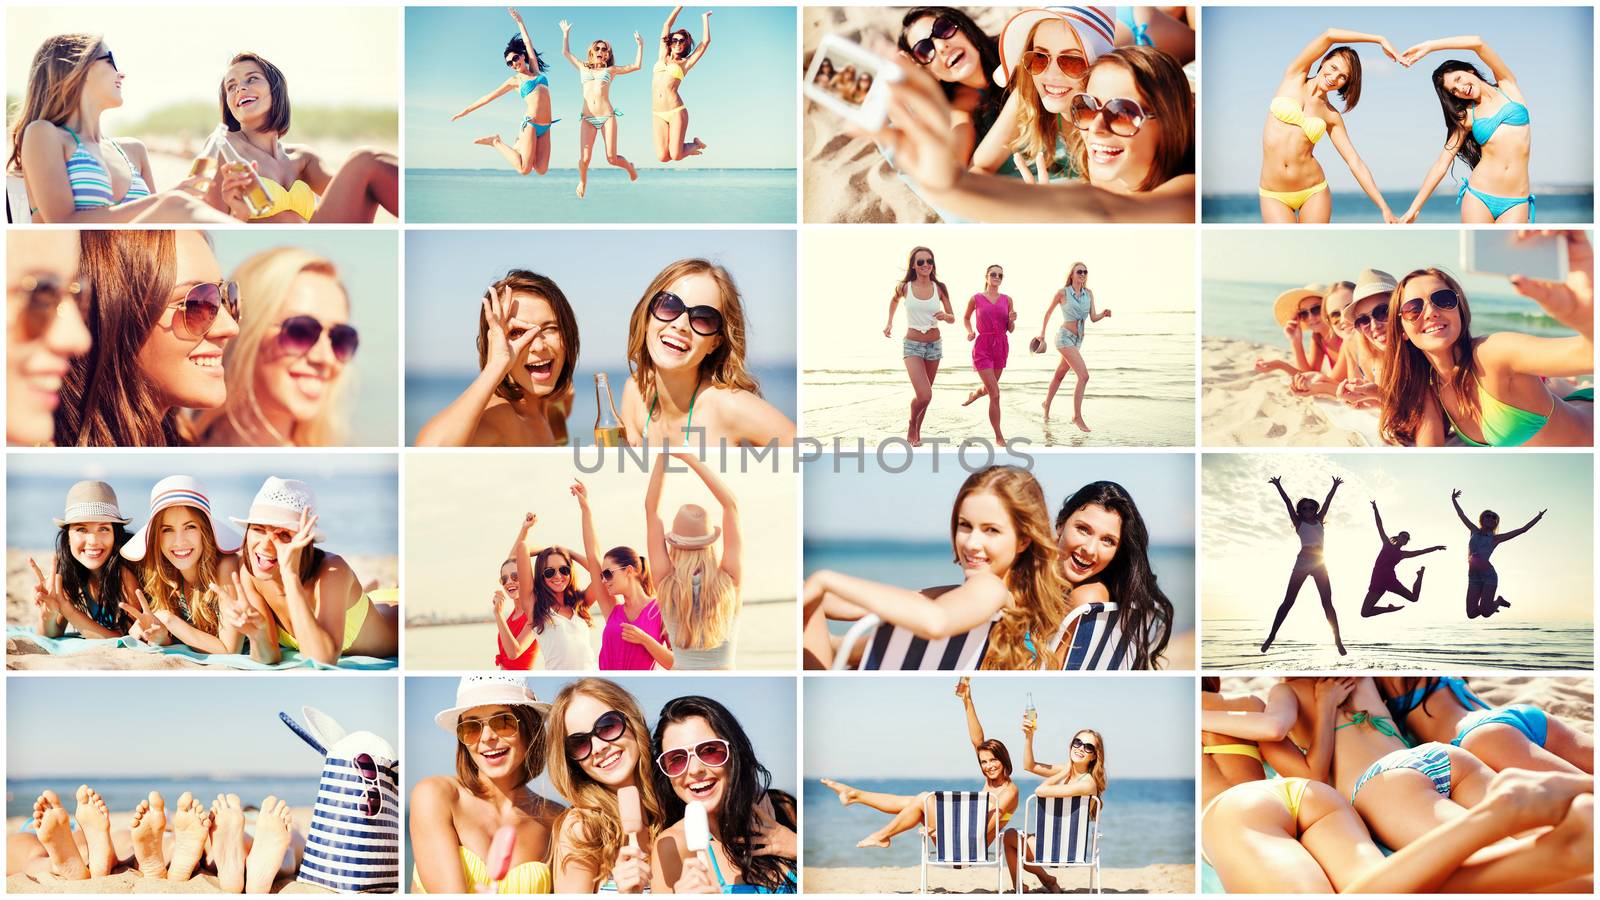 girls having fun on the beach by dolgachov